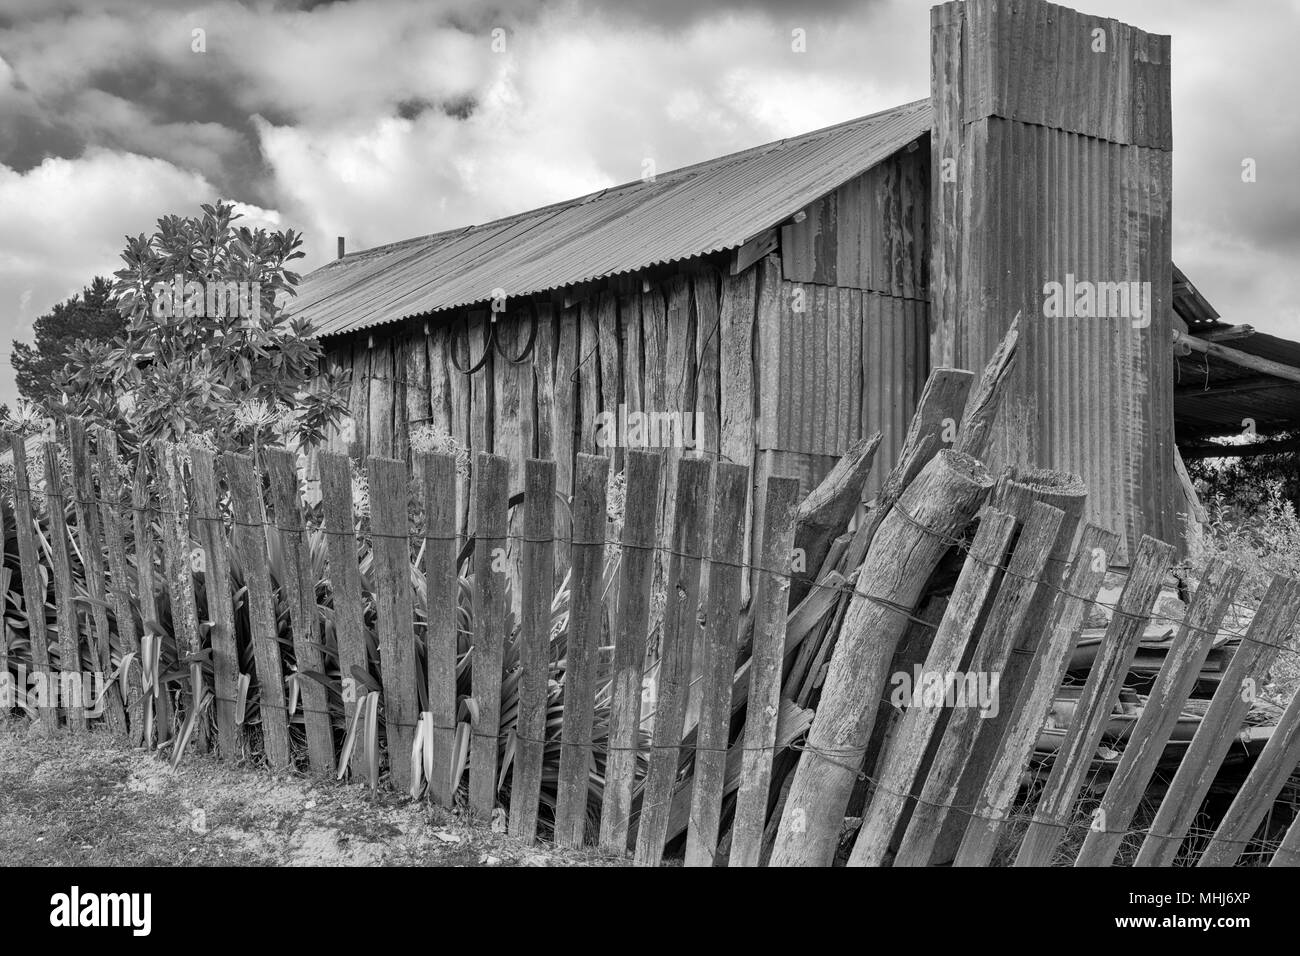 Hill fine, Bathurst, Nuovo Galles del Sud, Australia. Fotografia in bianco e nero di vecchi di ferro arrugginito e lastra di legno cottage in oro storica città mineraria Foto Stock